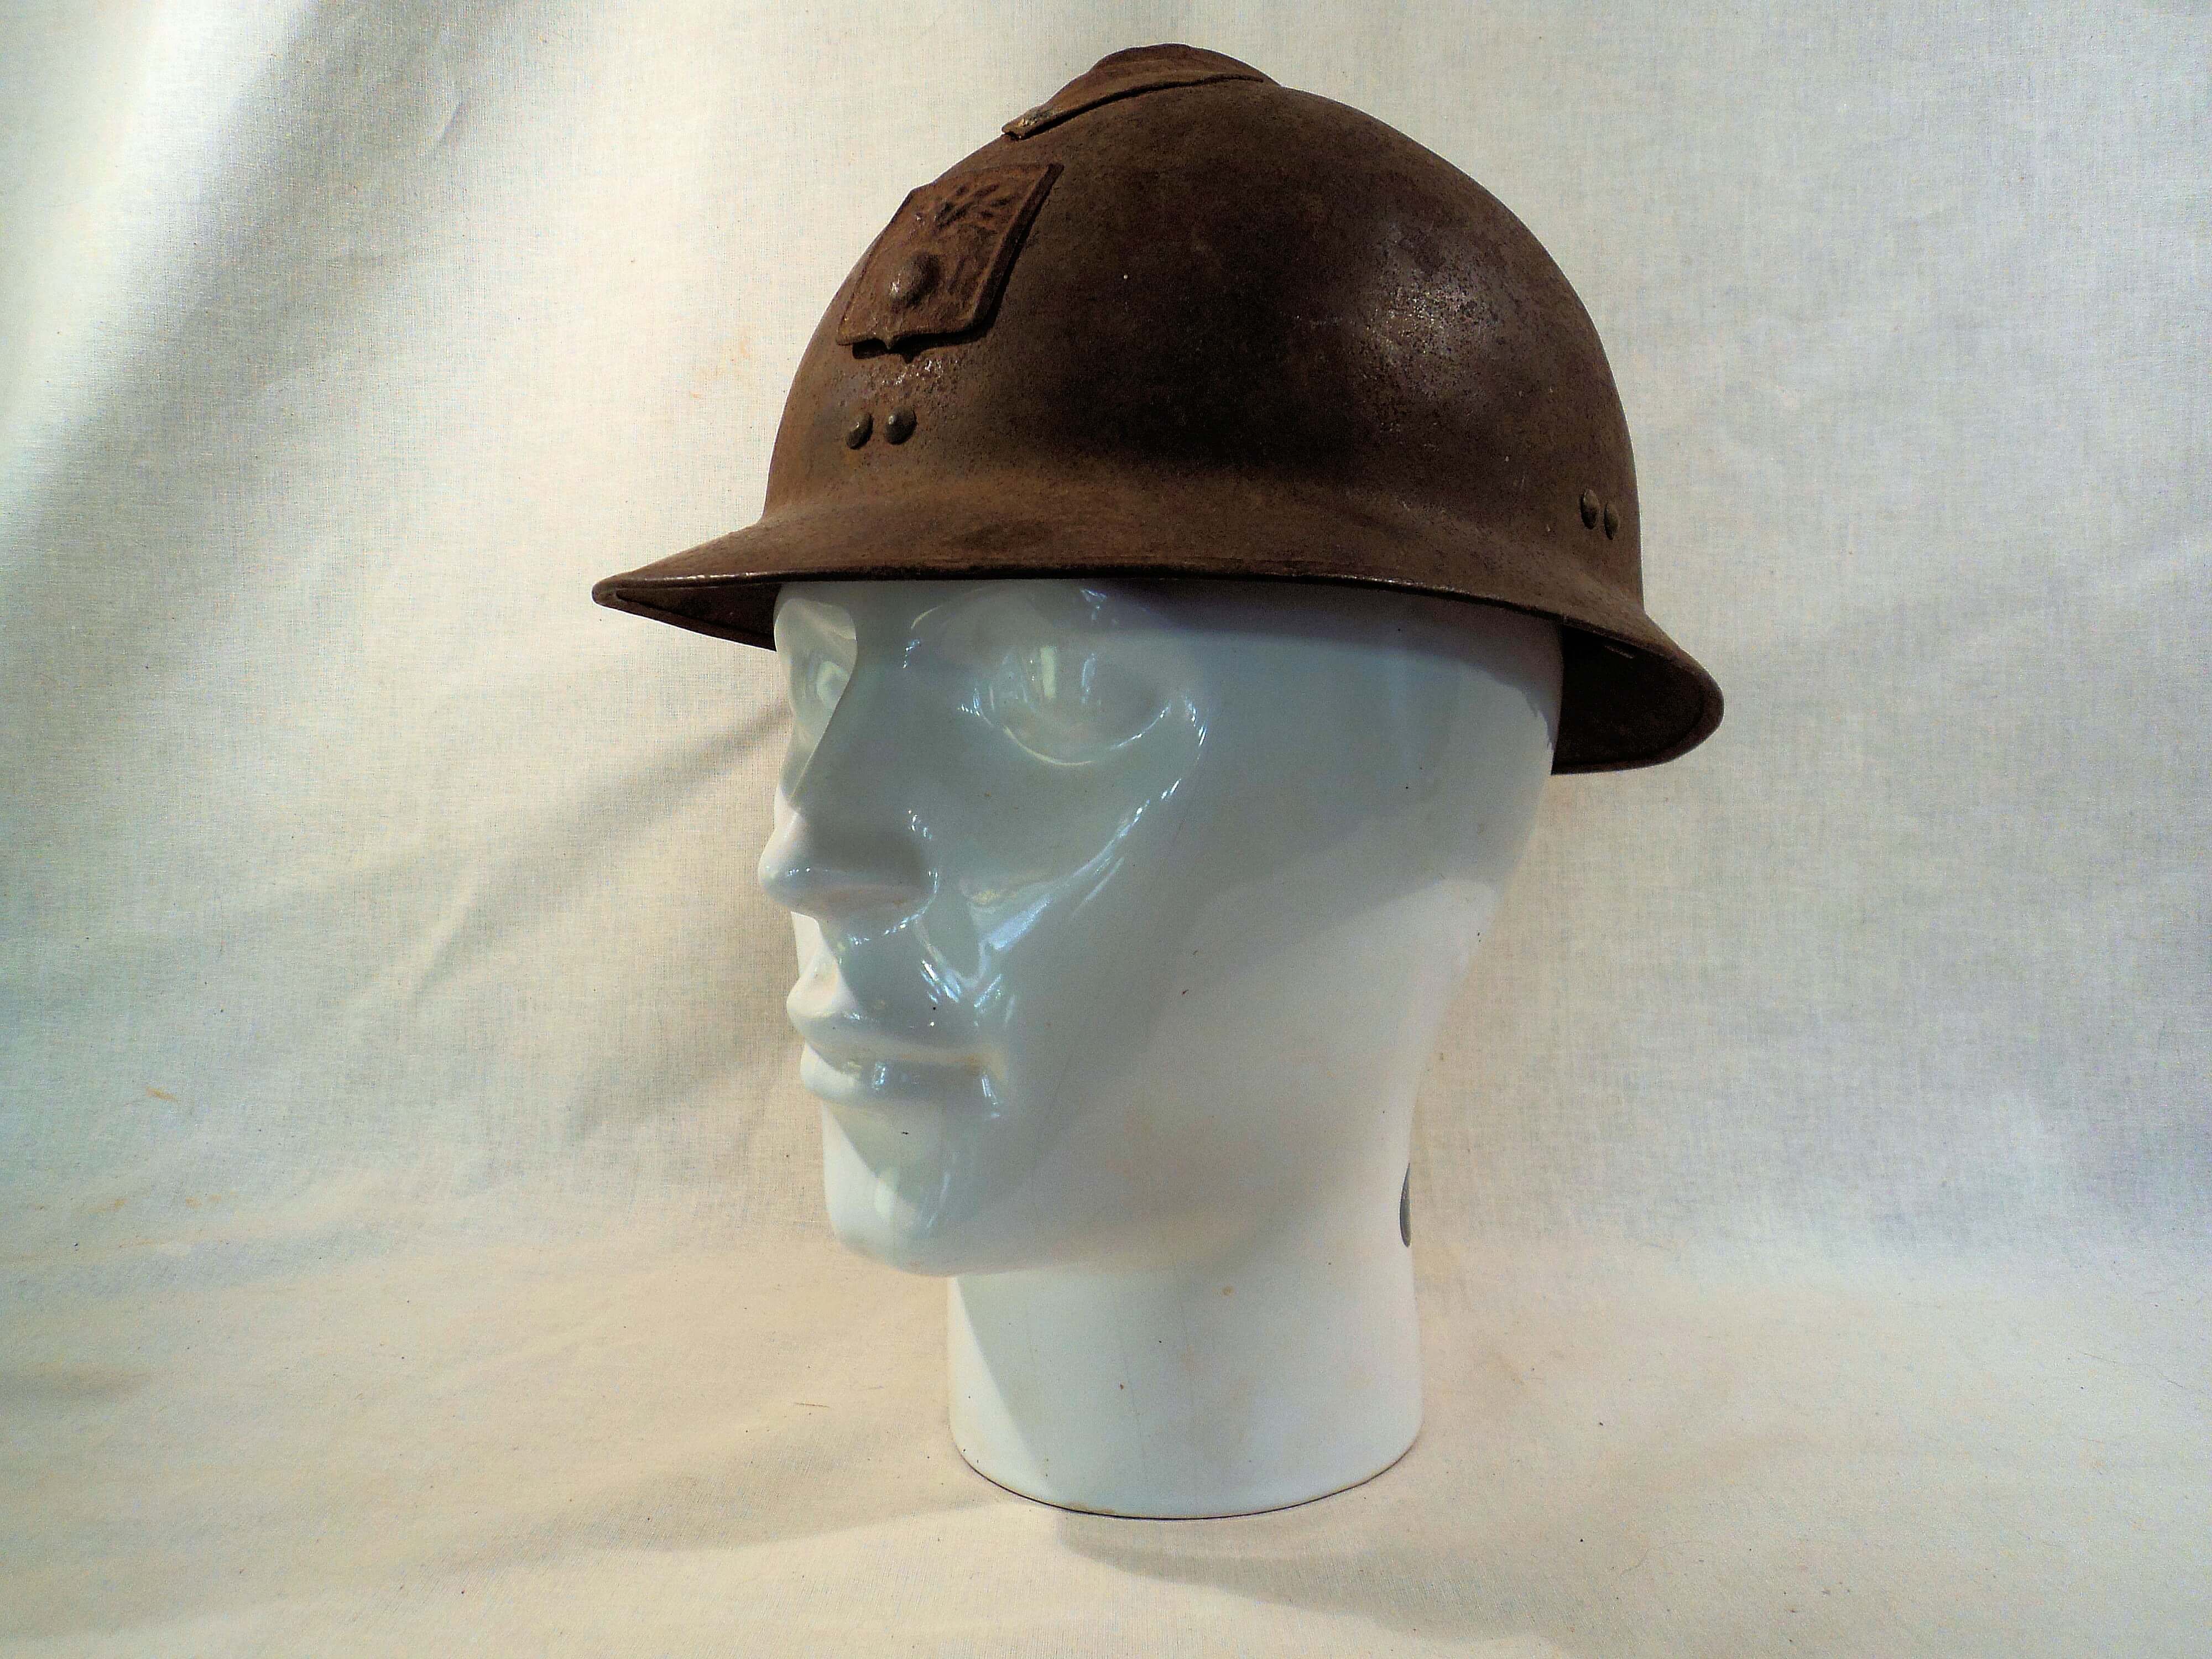 Franse helm burgerbescherming uit de tweede wereldoorlog